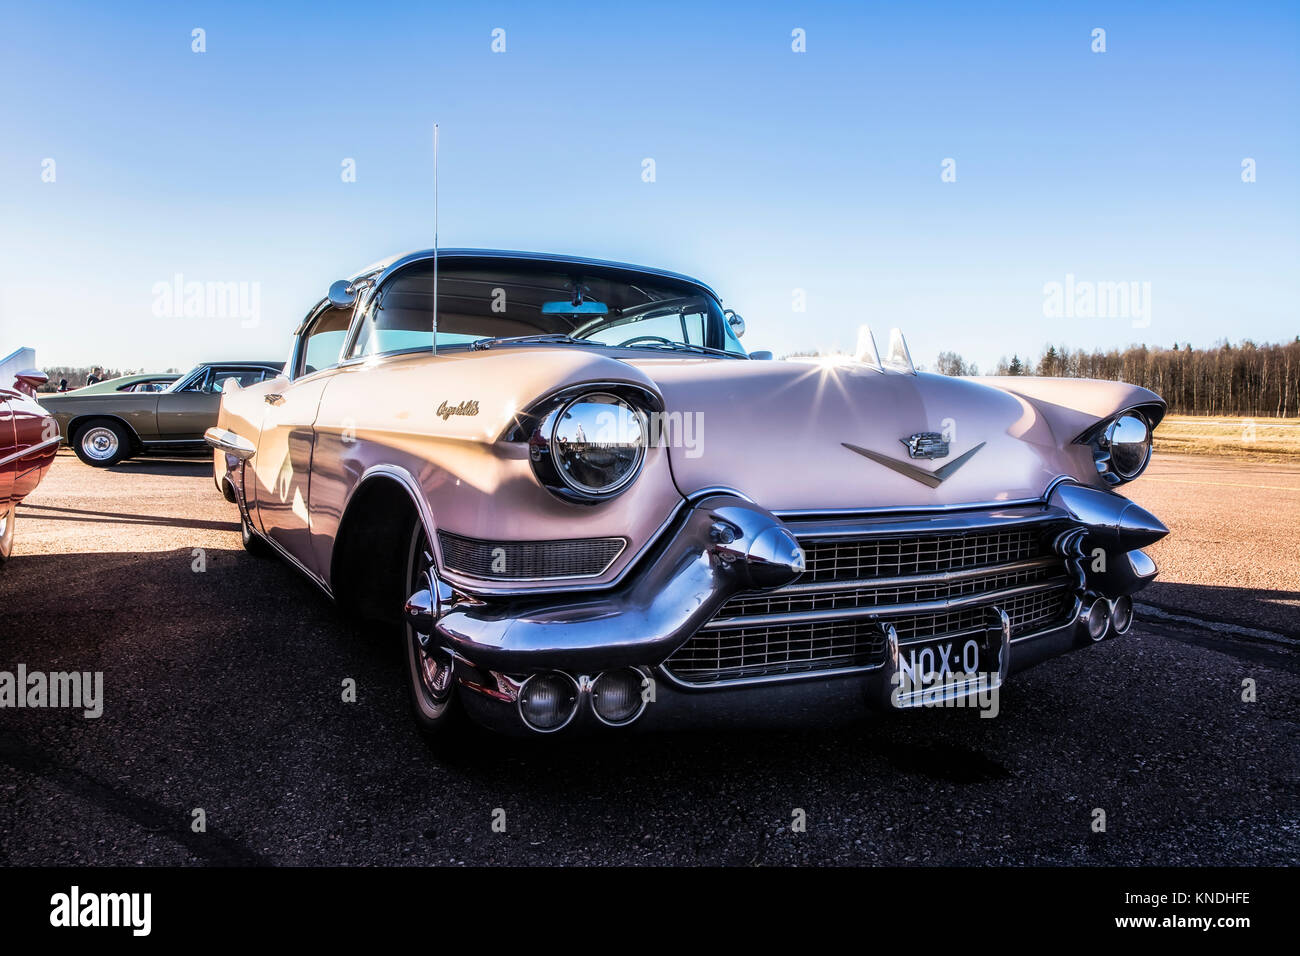 Atemberaubende 50er und 60er Jahren amerikanische Autos. Chrom, poliert und gewachst Farbe. Kreuzfahrt Event in Malmi Flugplatz, Helsinki, Finnland Stockfoto